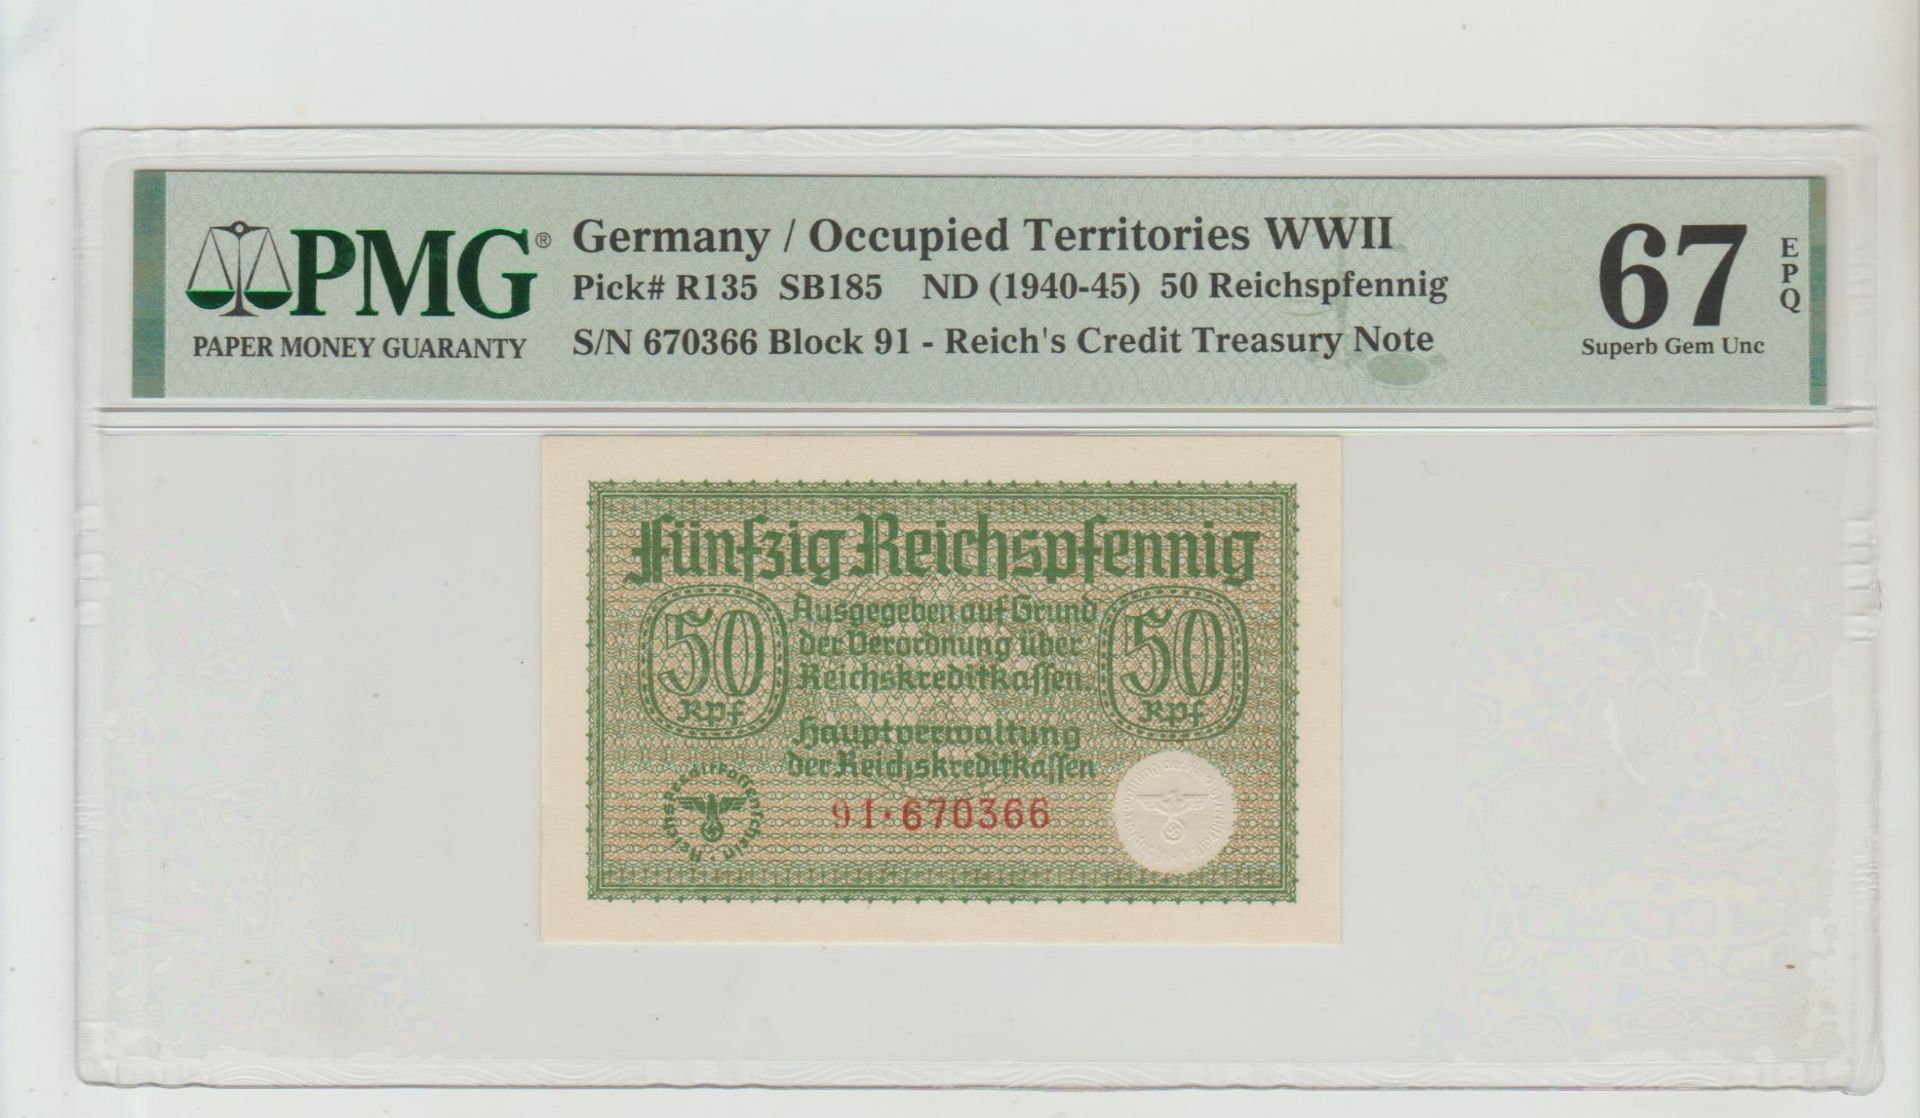 Germany, 50 Reichspfennig, 1945 year